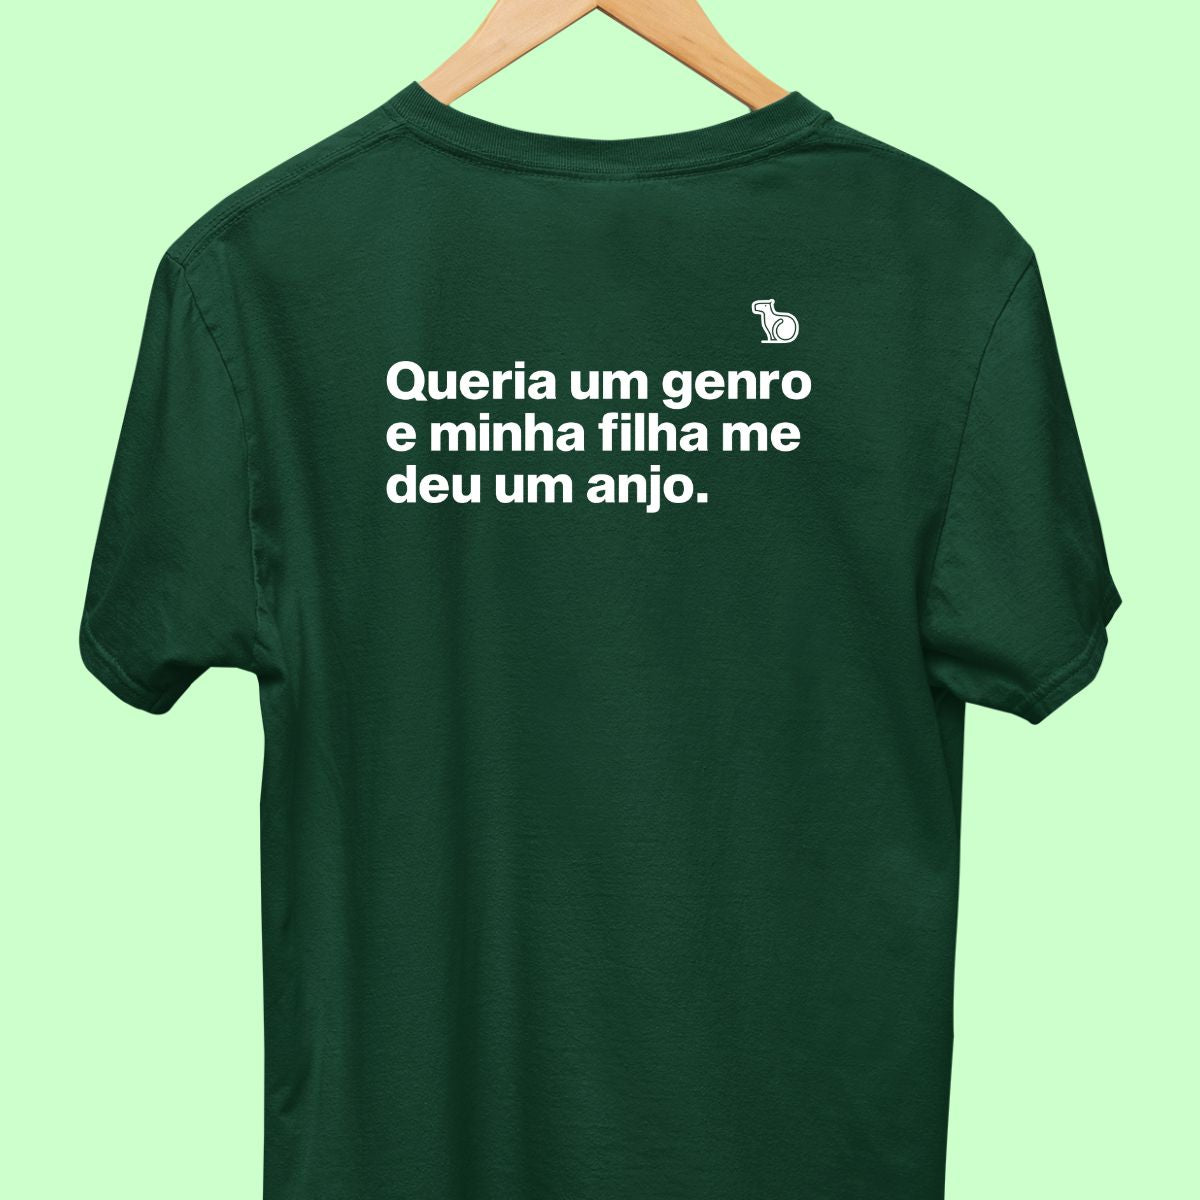 Camiseta com a frase "Queria um genro e minha filha me deu um anjo." masculina verde.